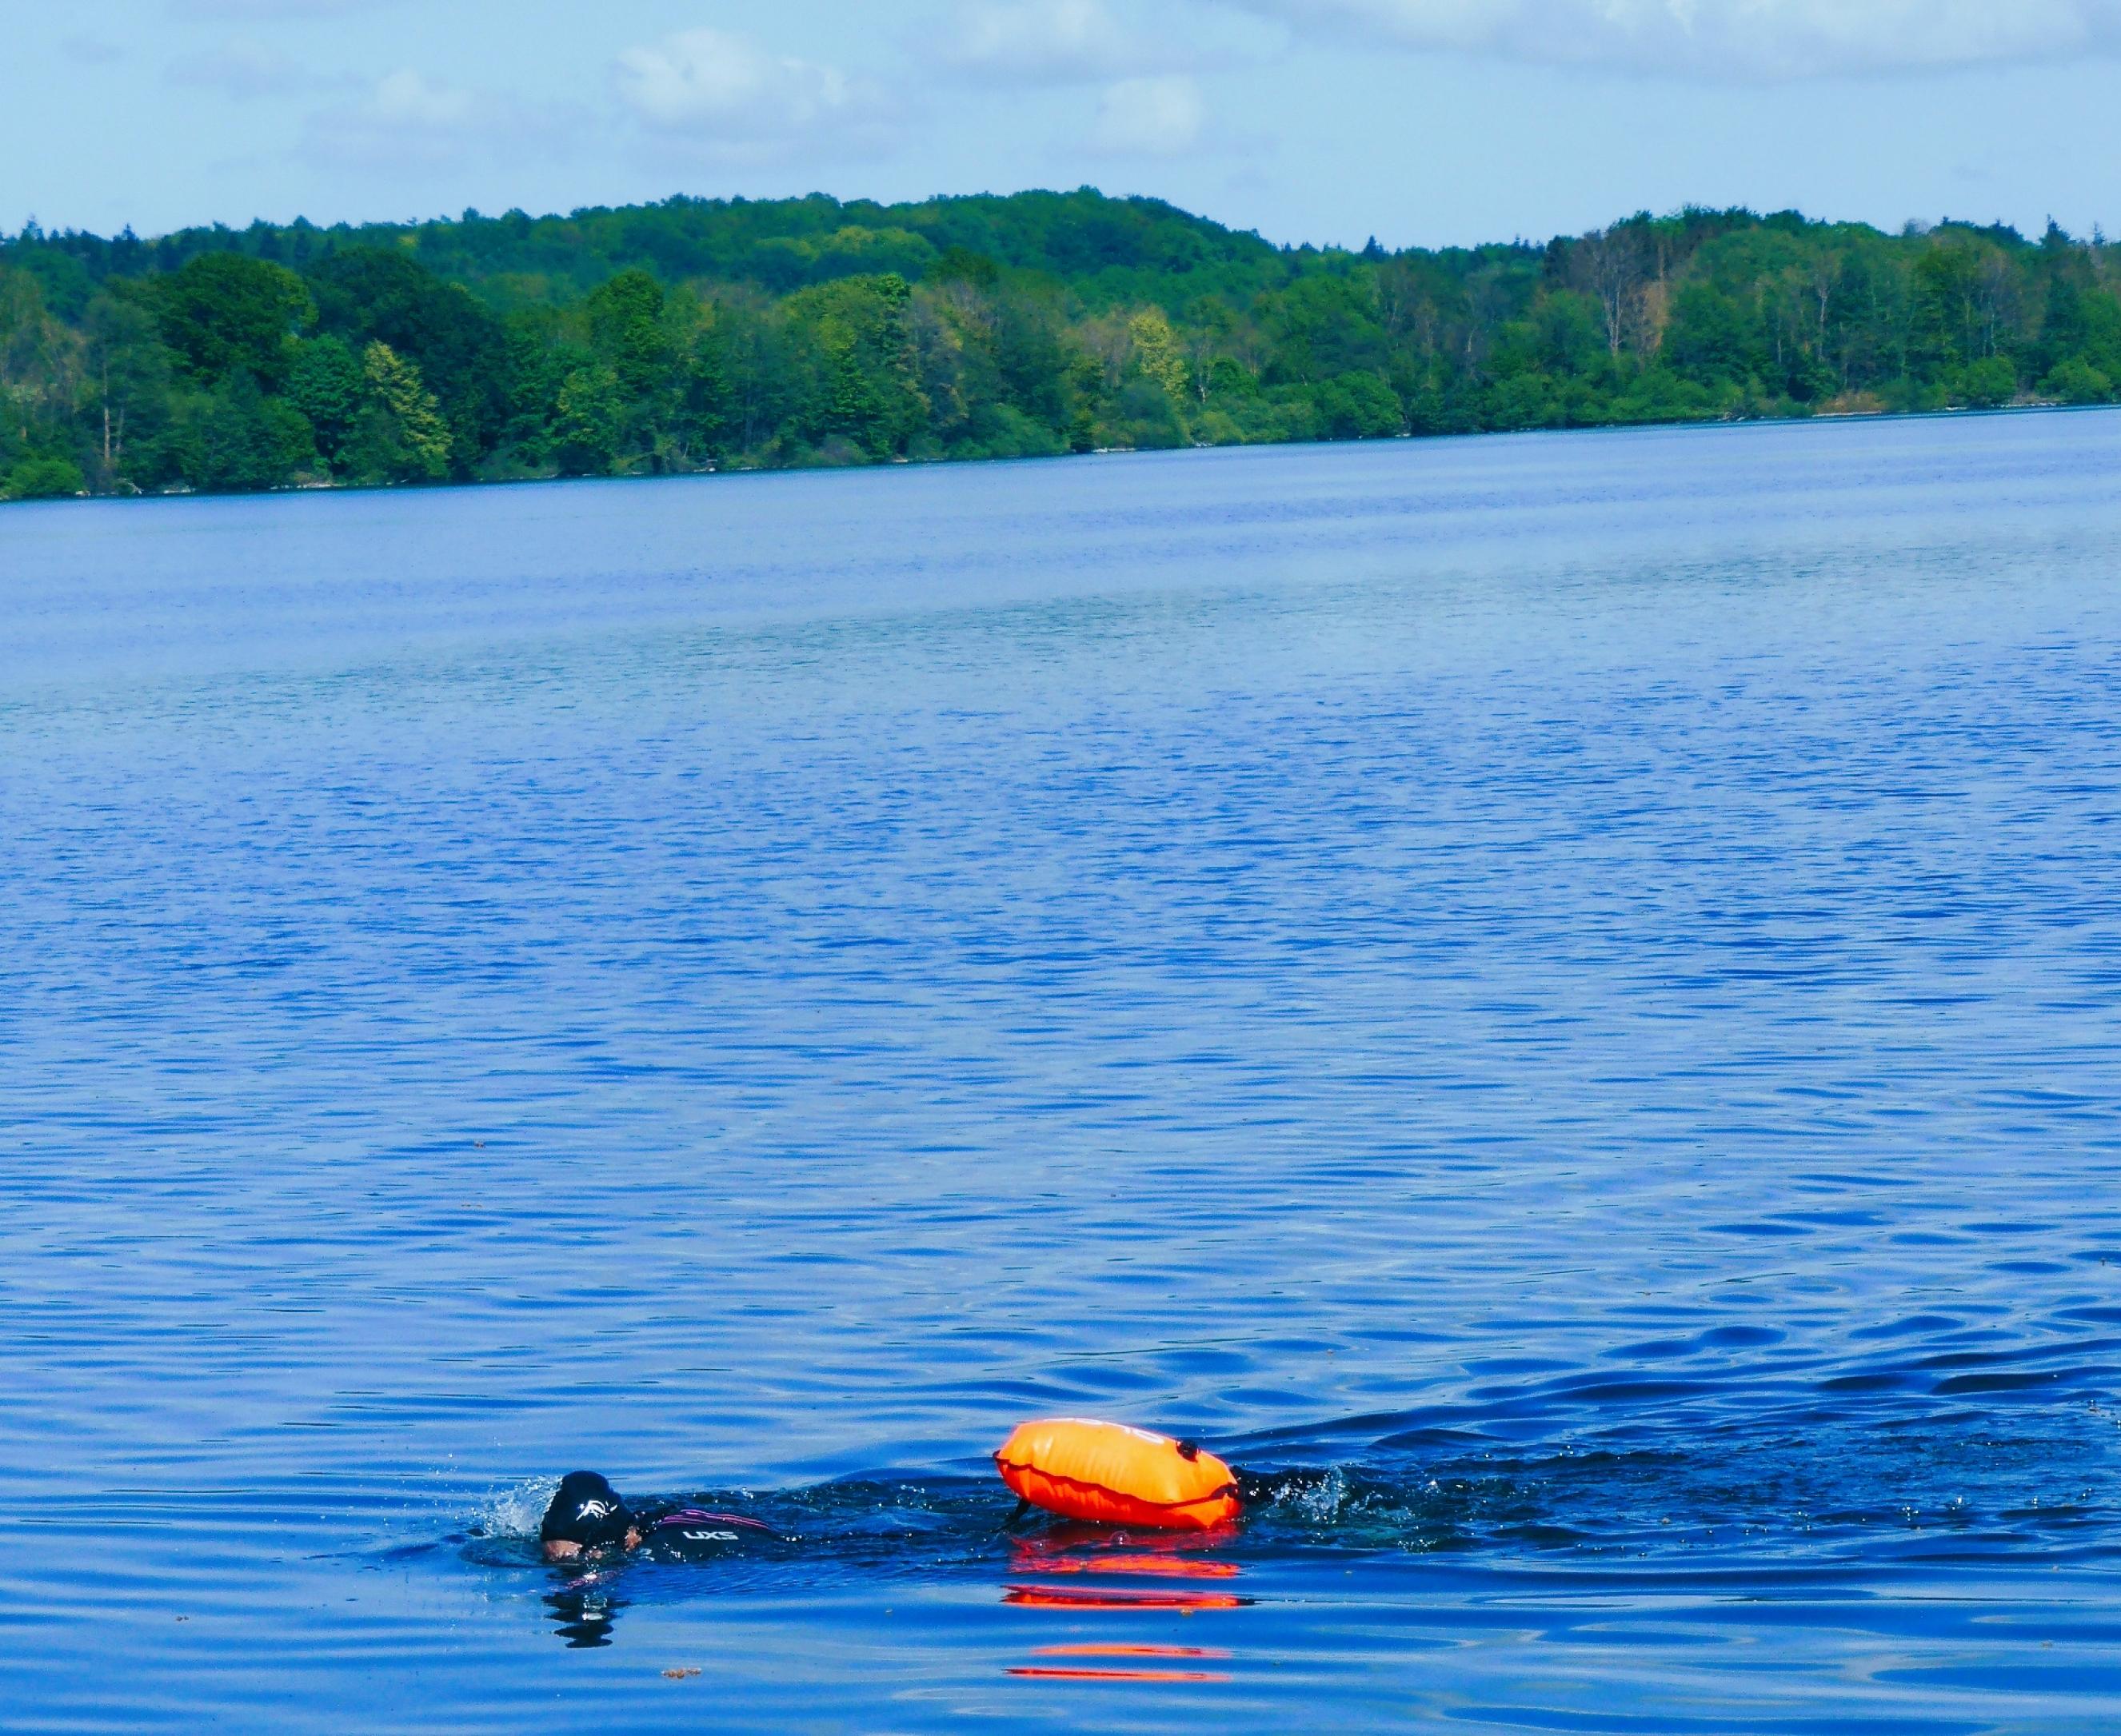 Schwimmer im schwarzen Neoprenanzug und ebensolcher Bademütze, eine orangene Schwimmboje hinter sich ziehend, vor einer Wasser- und Wald-Kulisse.